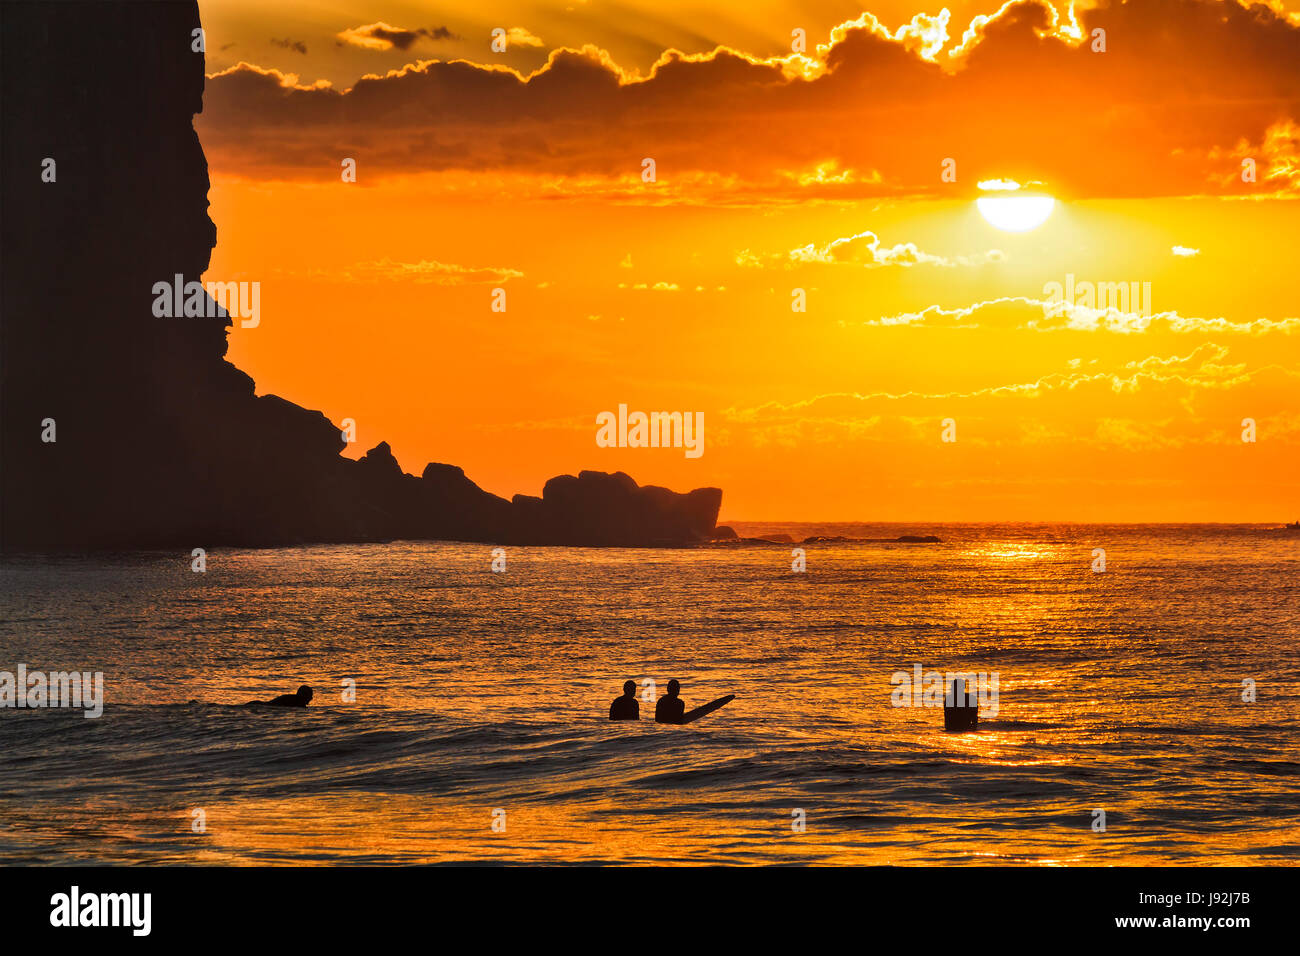 Un groupe de surfers actifs flottant sur les vagues de l'océan ouvert au lever de soleil orange contre Avalon hors plage dans une ombre de grands falaise de grès à Sydney, Aus Banque D'Images